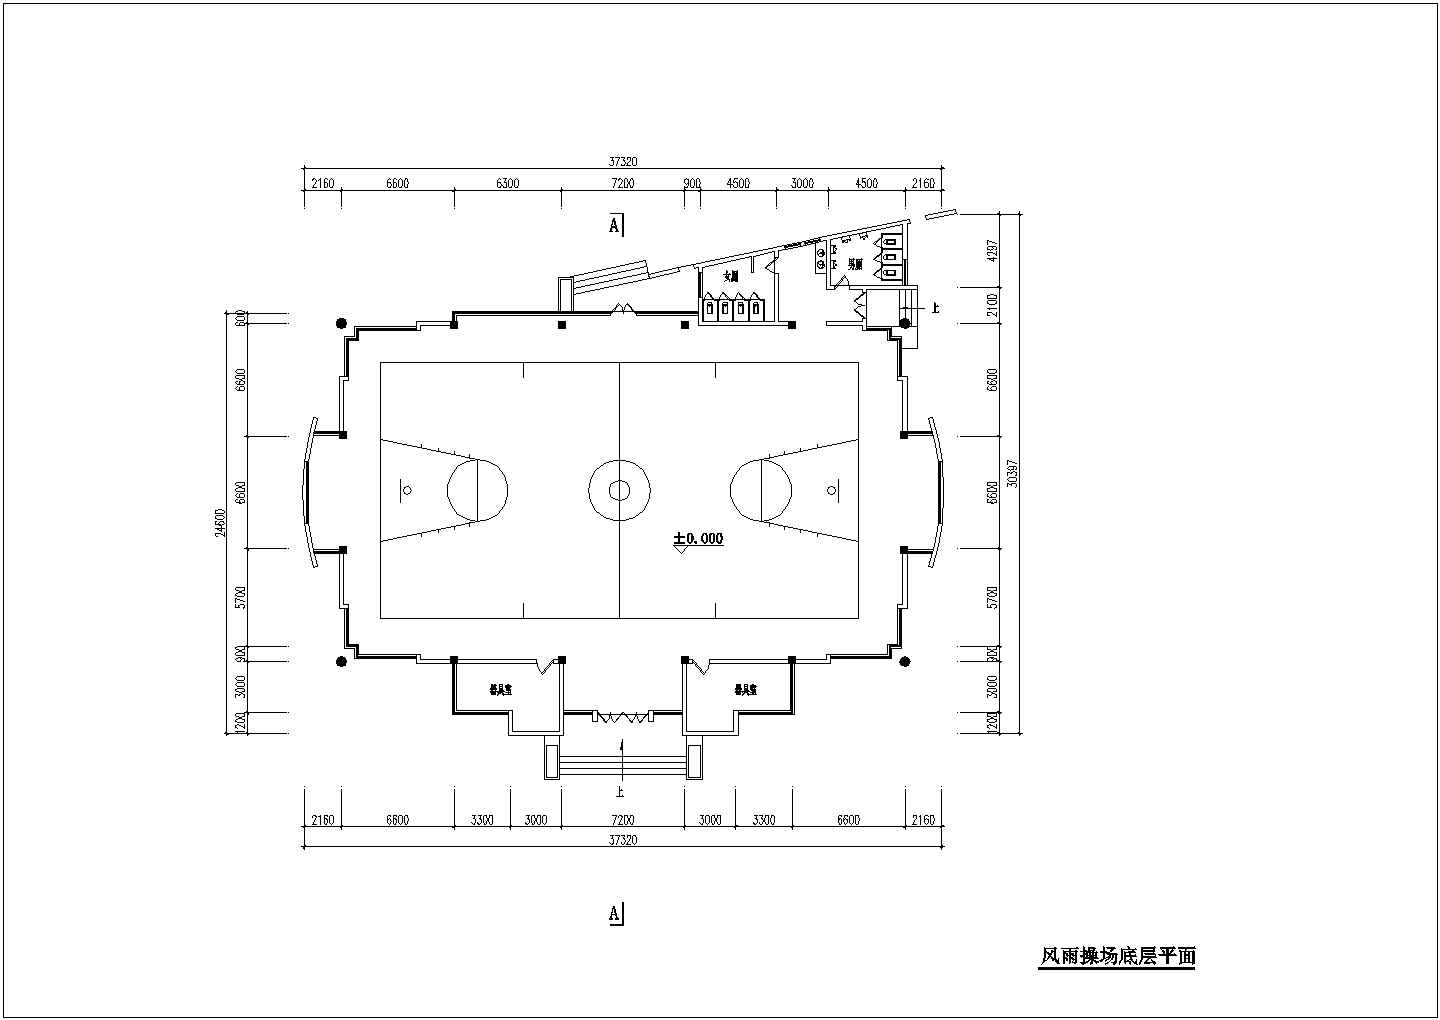 上海xxx中学占地750平米单层钢框架结构篮球馆平立剖面设计CAD图纸